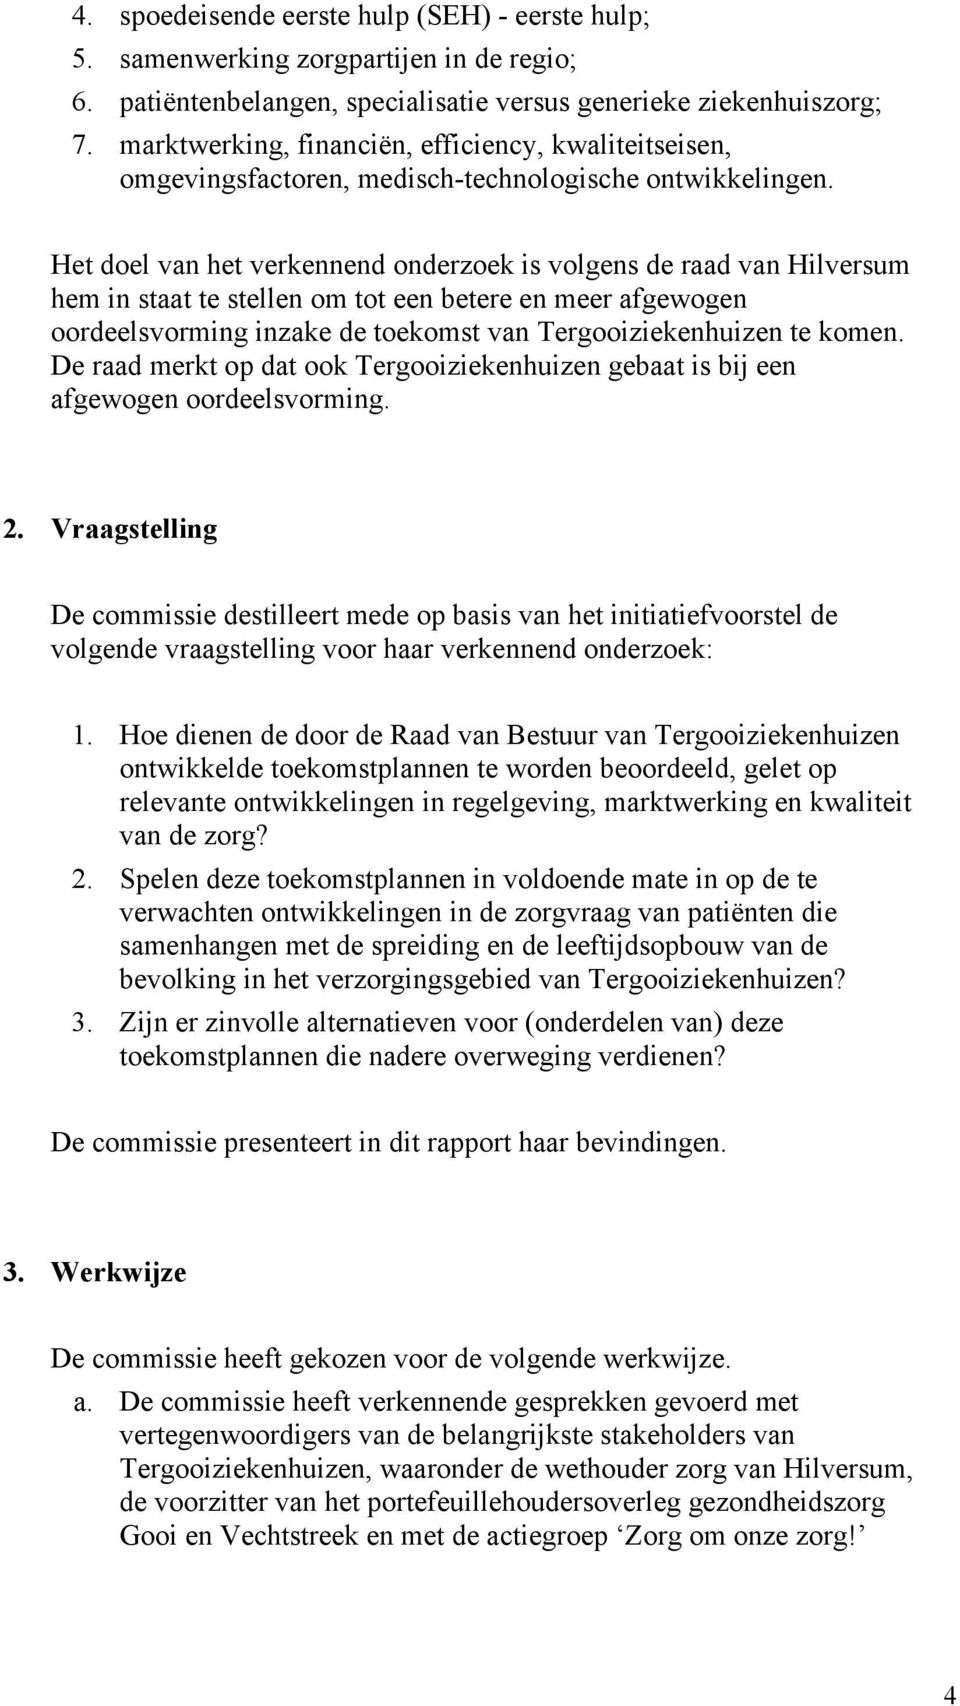 Het doel van het verkennend onderzoek is volgens de raad van Hilversum hem in staat te stellen om tot een betere en meer afgewogen oordeelsvorming inzake de toekomst van Tergooiziekenhuizen te komen.